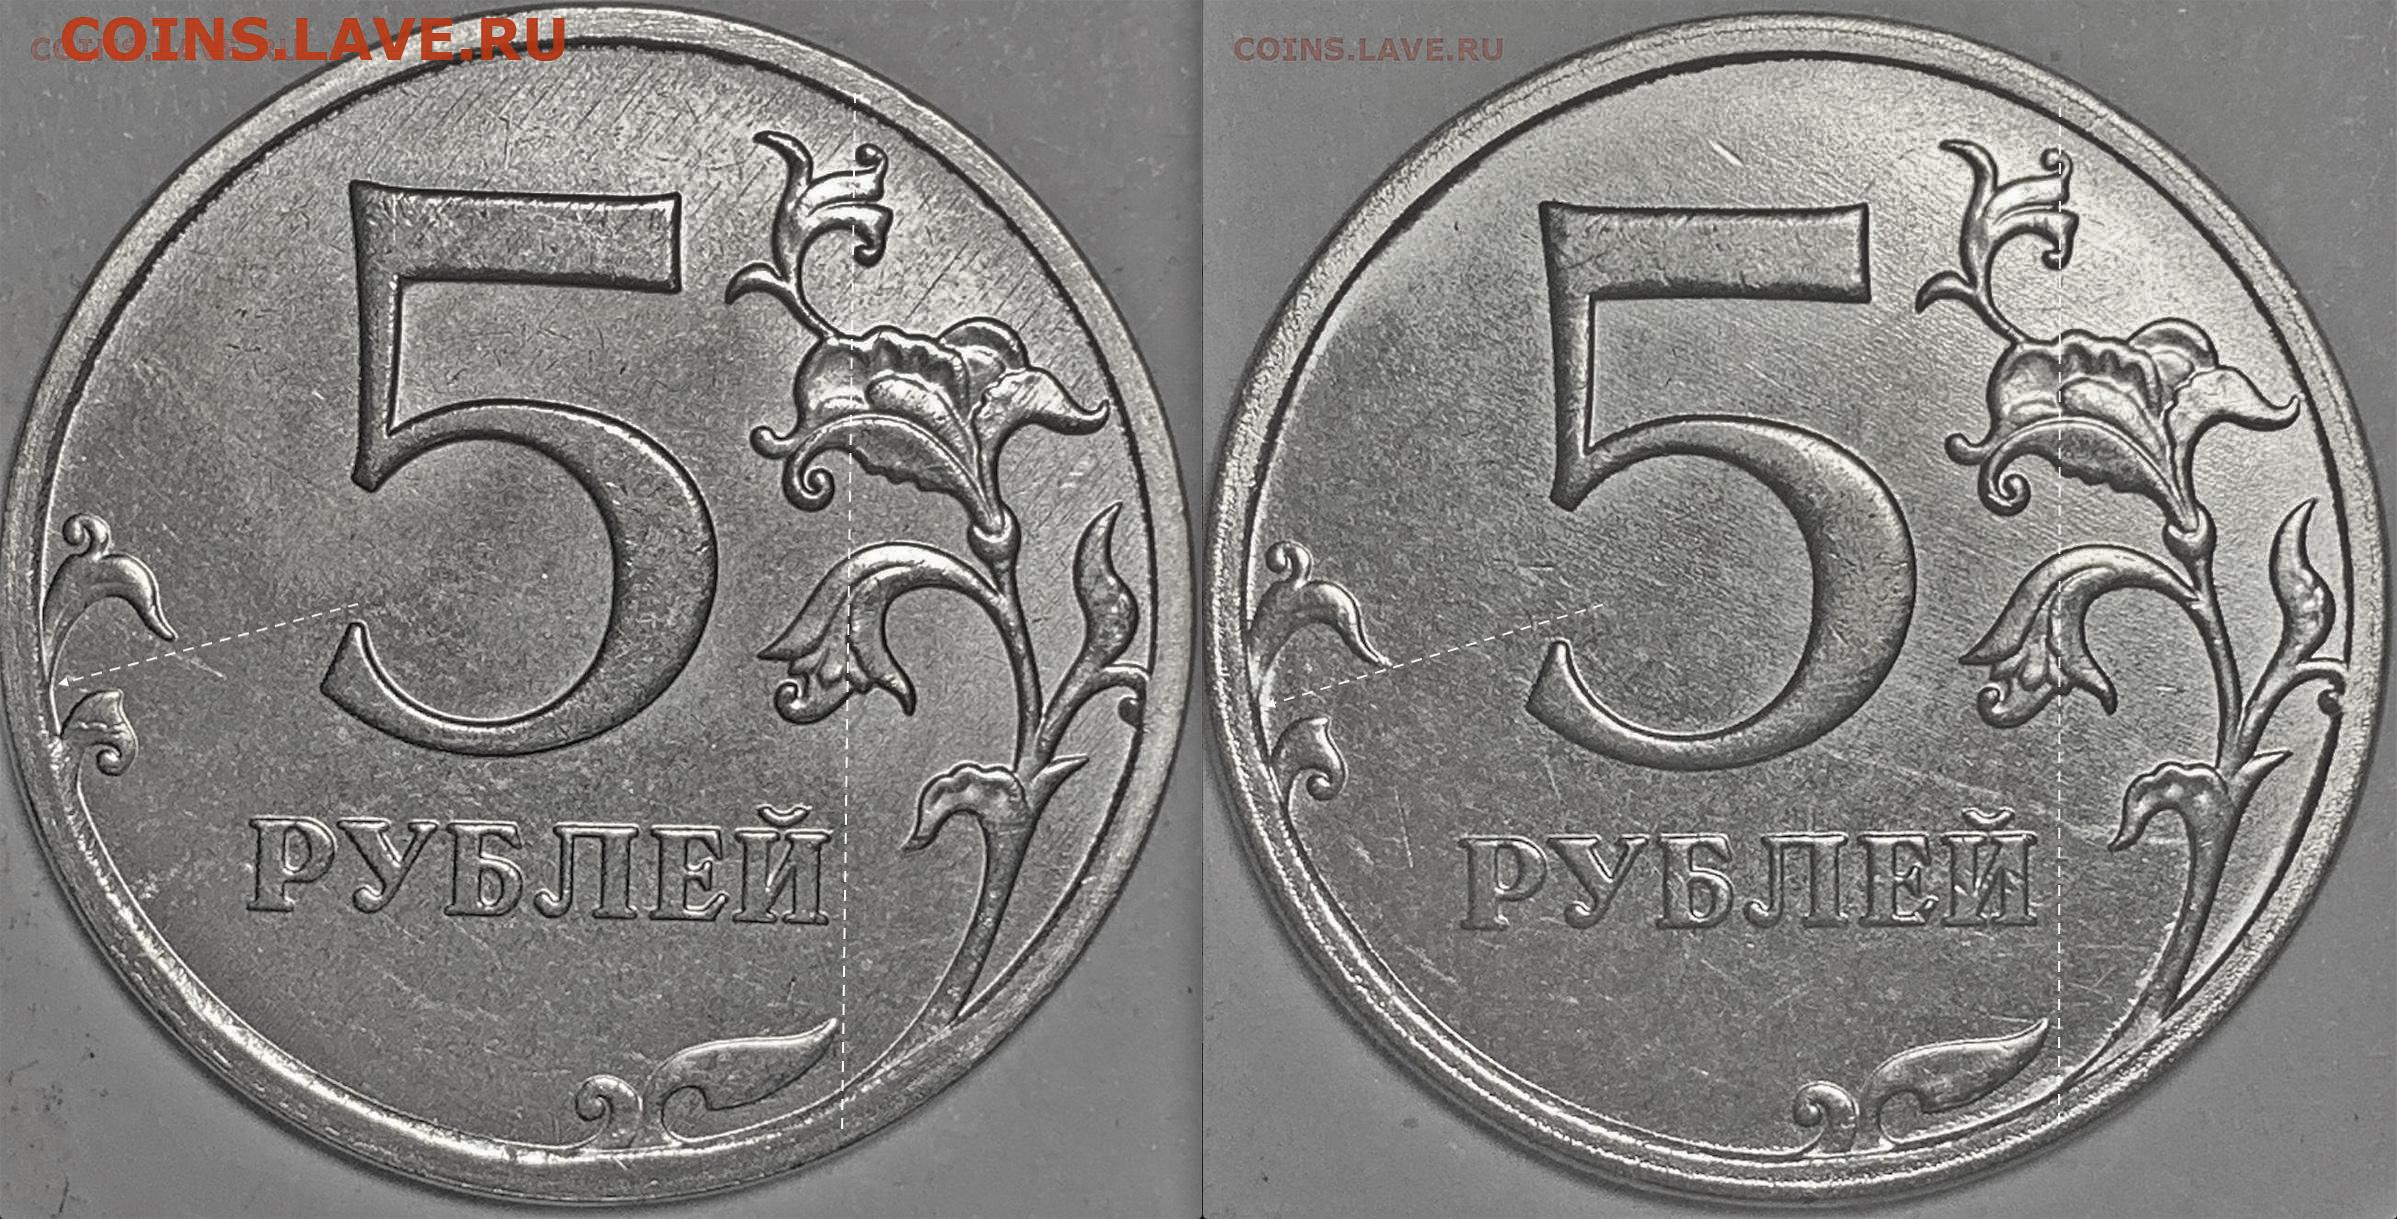 65 рублей 60. 5 Рублей 2021 года. Разновидности 5 рублей 2021 года. Монета 20 рублей 2021. 5 Рублей 2021 характеристики.